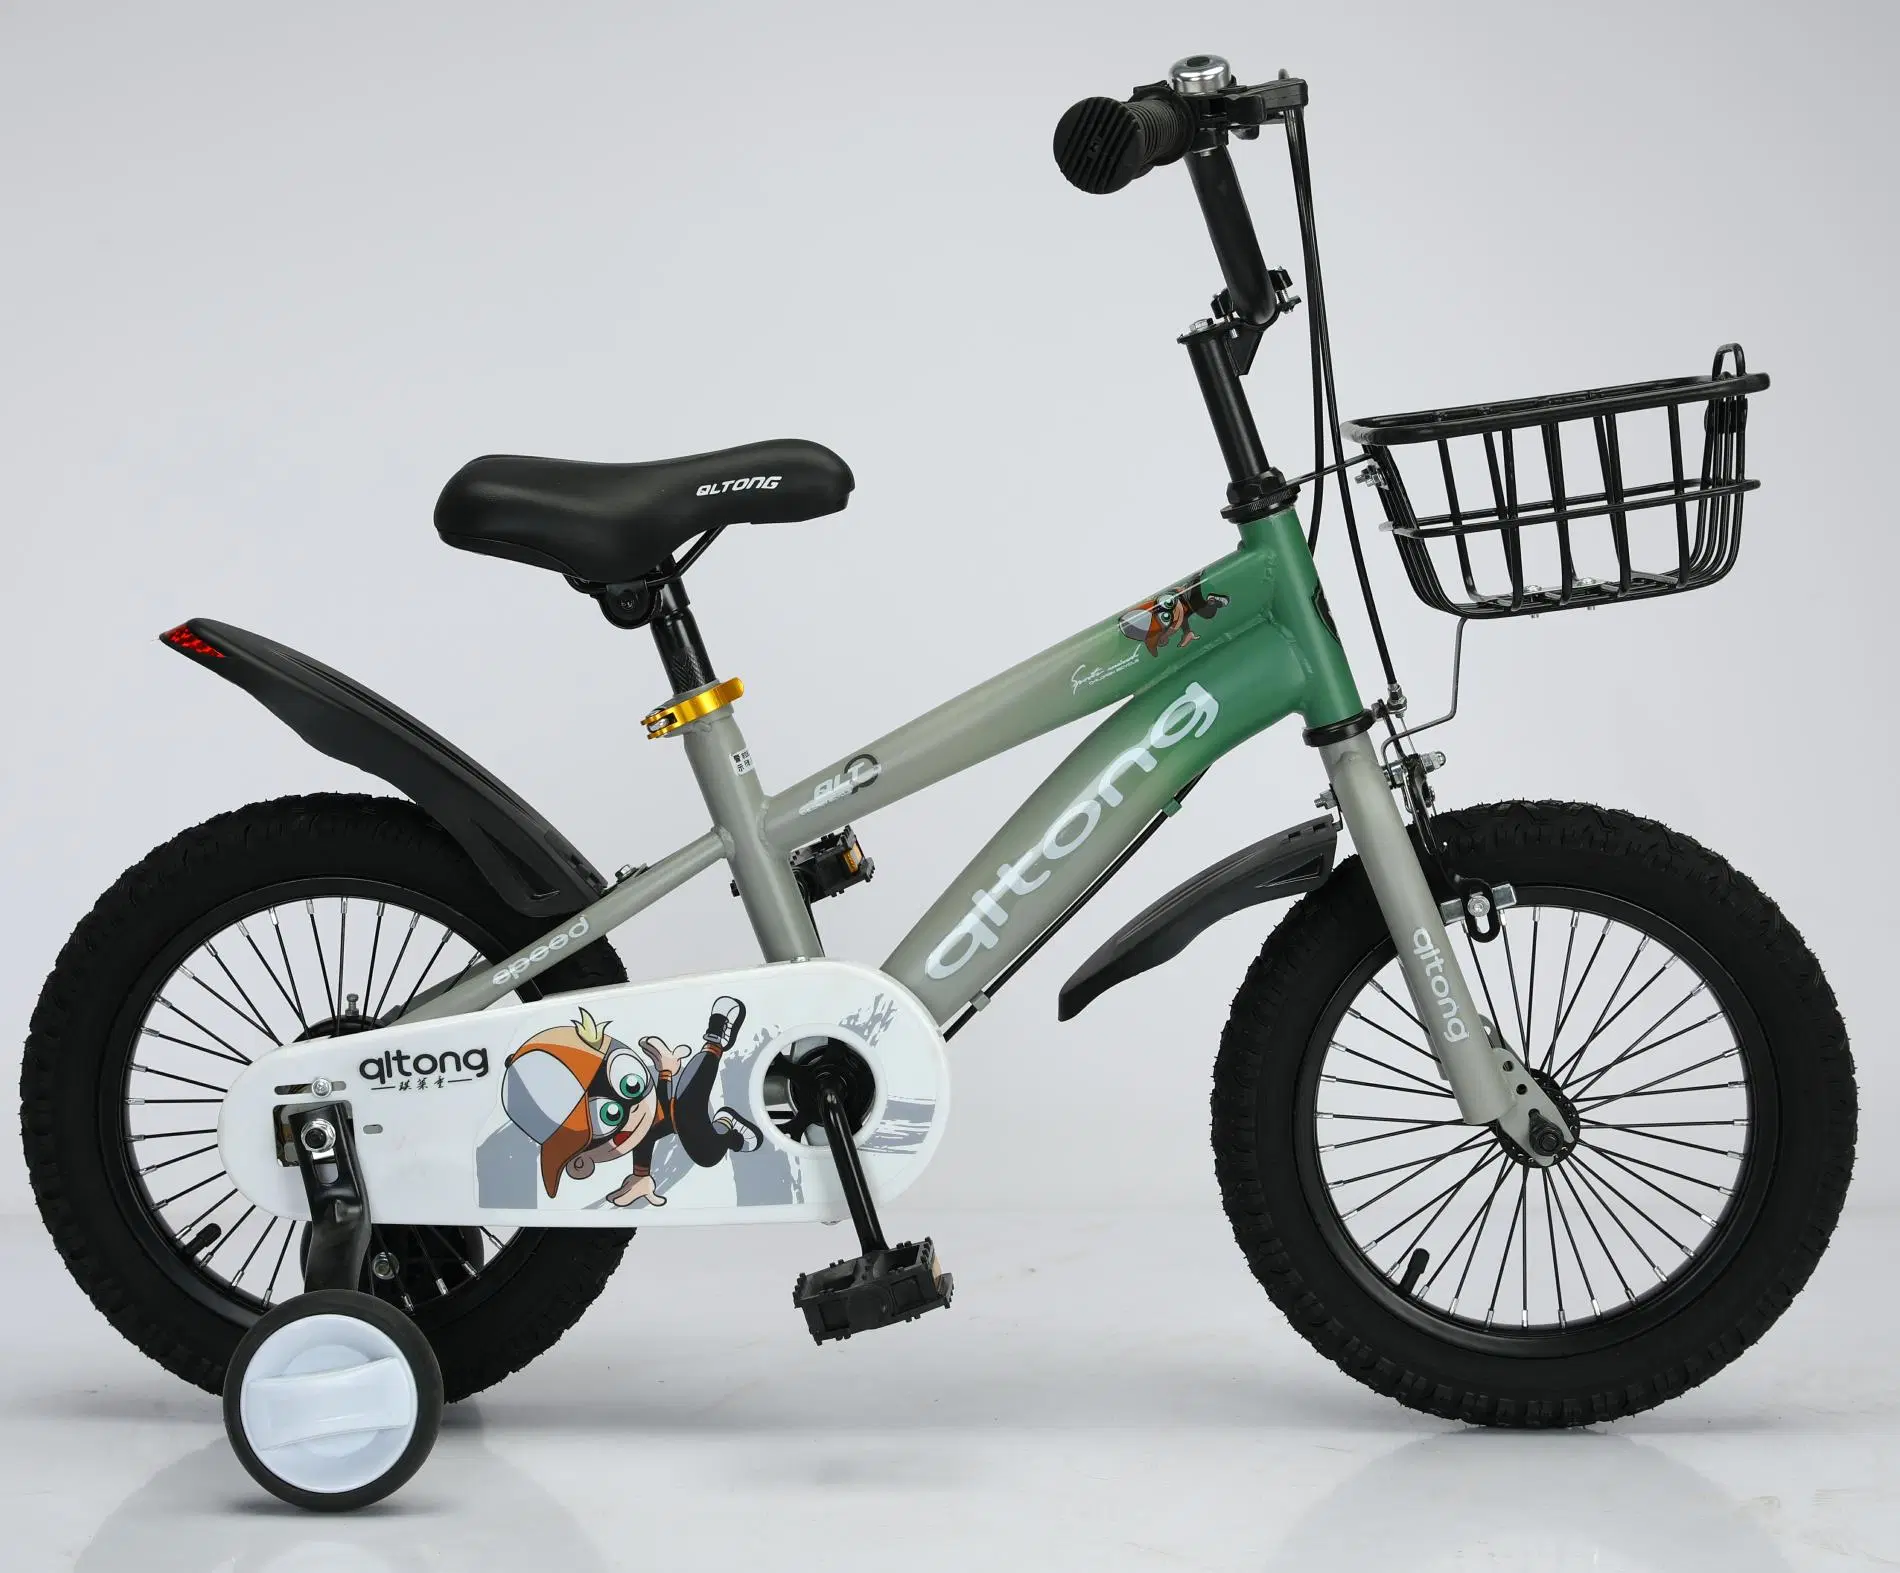 Heißer Verkauf OEM Service Kinder Fahrrad / Kinder Fahrrad / Kinder Spielzeug Für 3-8 Jahre